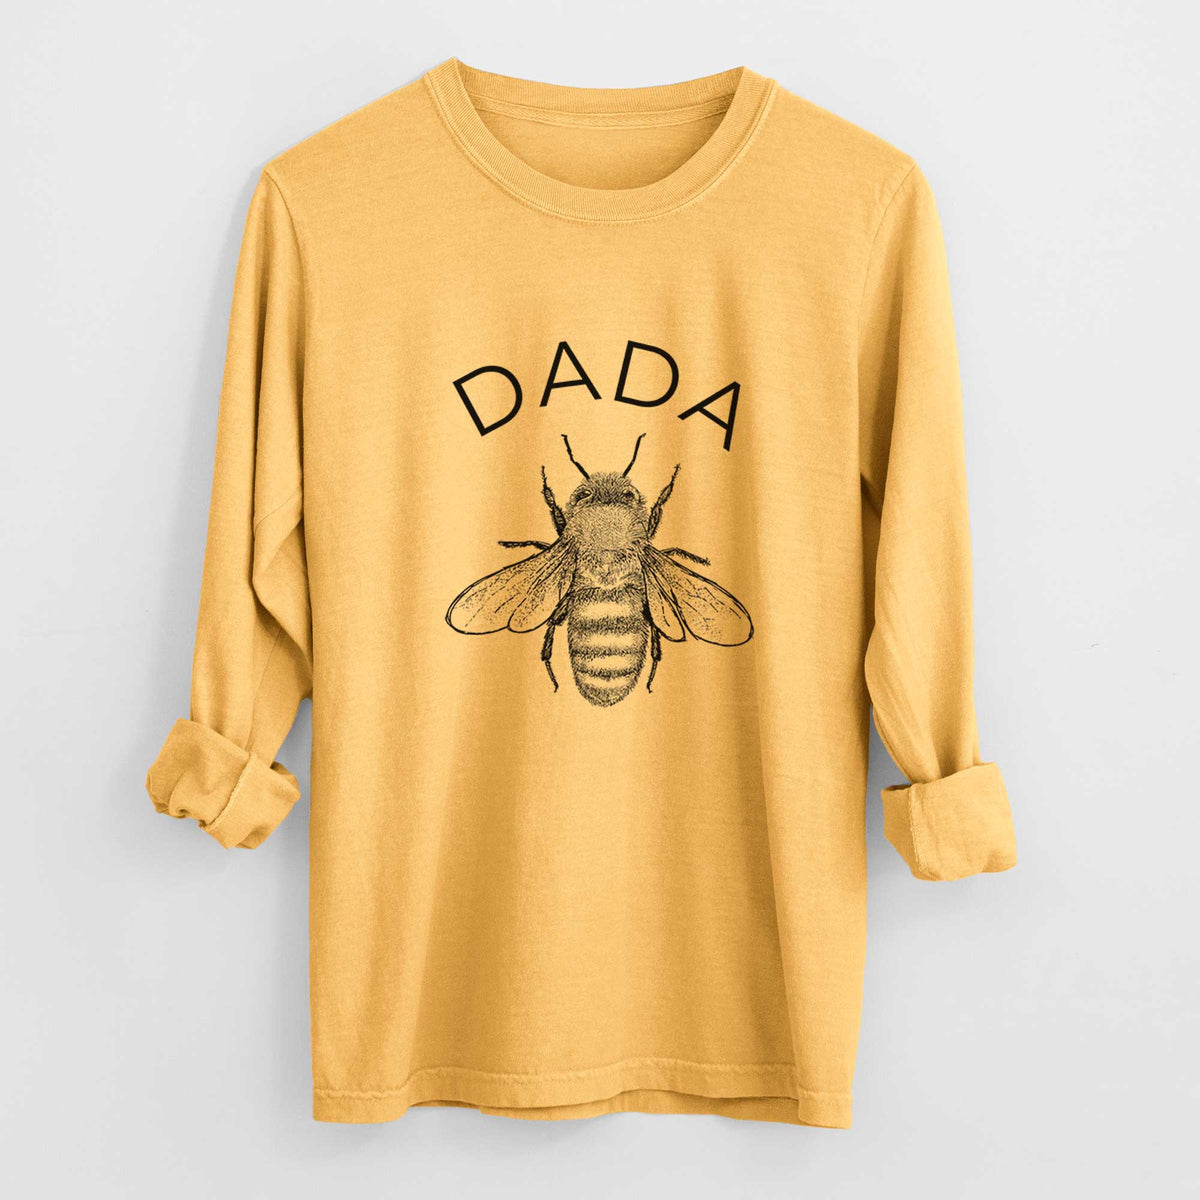 Dada Bee - Heavyweight 100% Cotton Long Sleeve